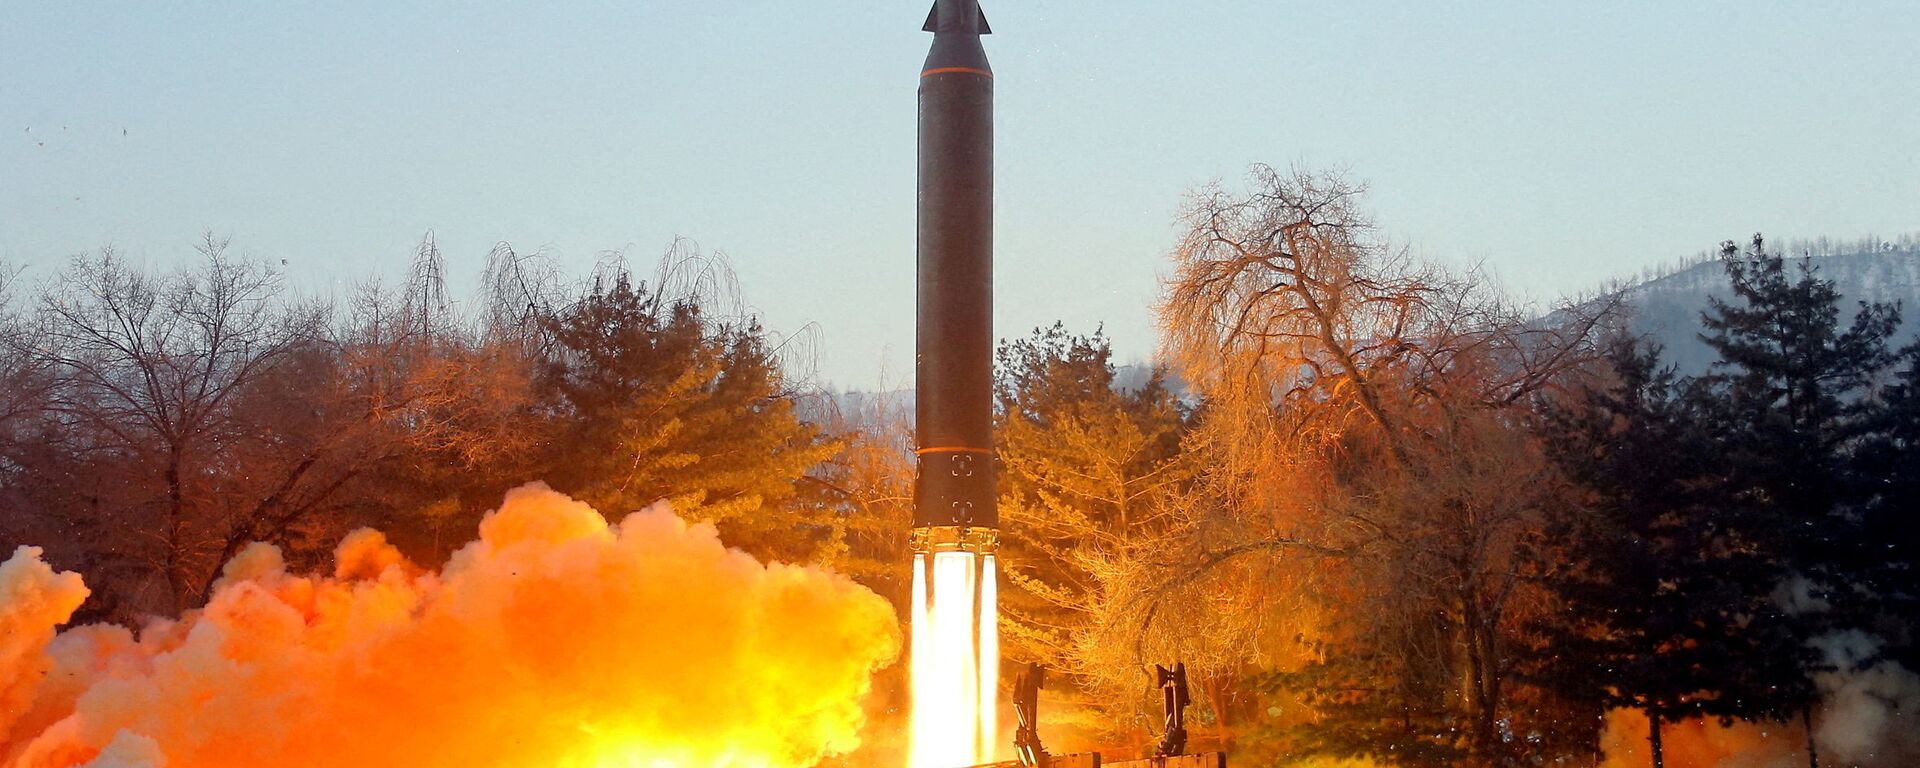 اختبار إطلاق صاروخ تفوق سرعته سرعة الصوت في كوريا الشمالية، 11 يناير 2022  - سبوتنيك عربي, 1920, 24.03.2022